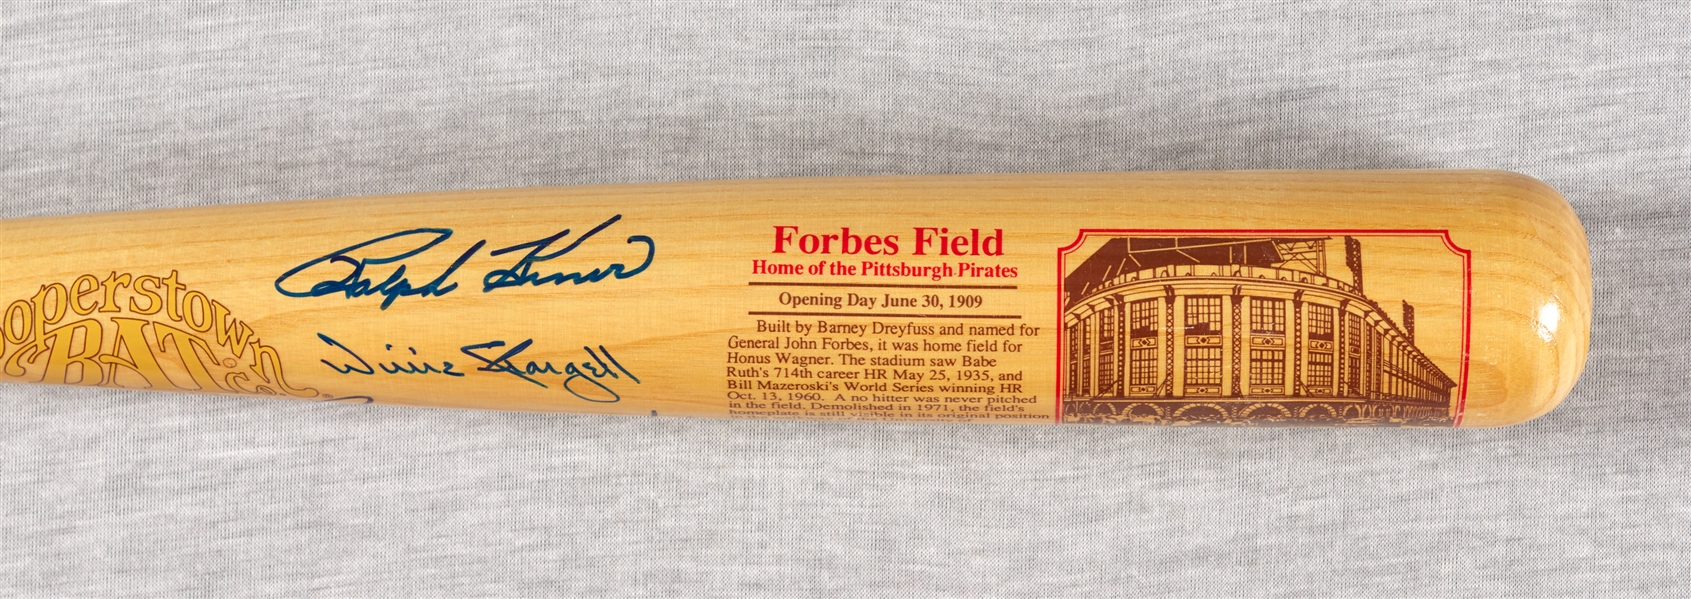 Willie Stargell, Mazeroski & Kiner Signed Cooperstown Forbes Field Bat